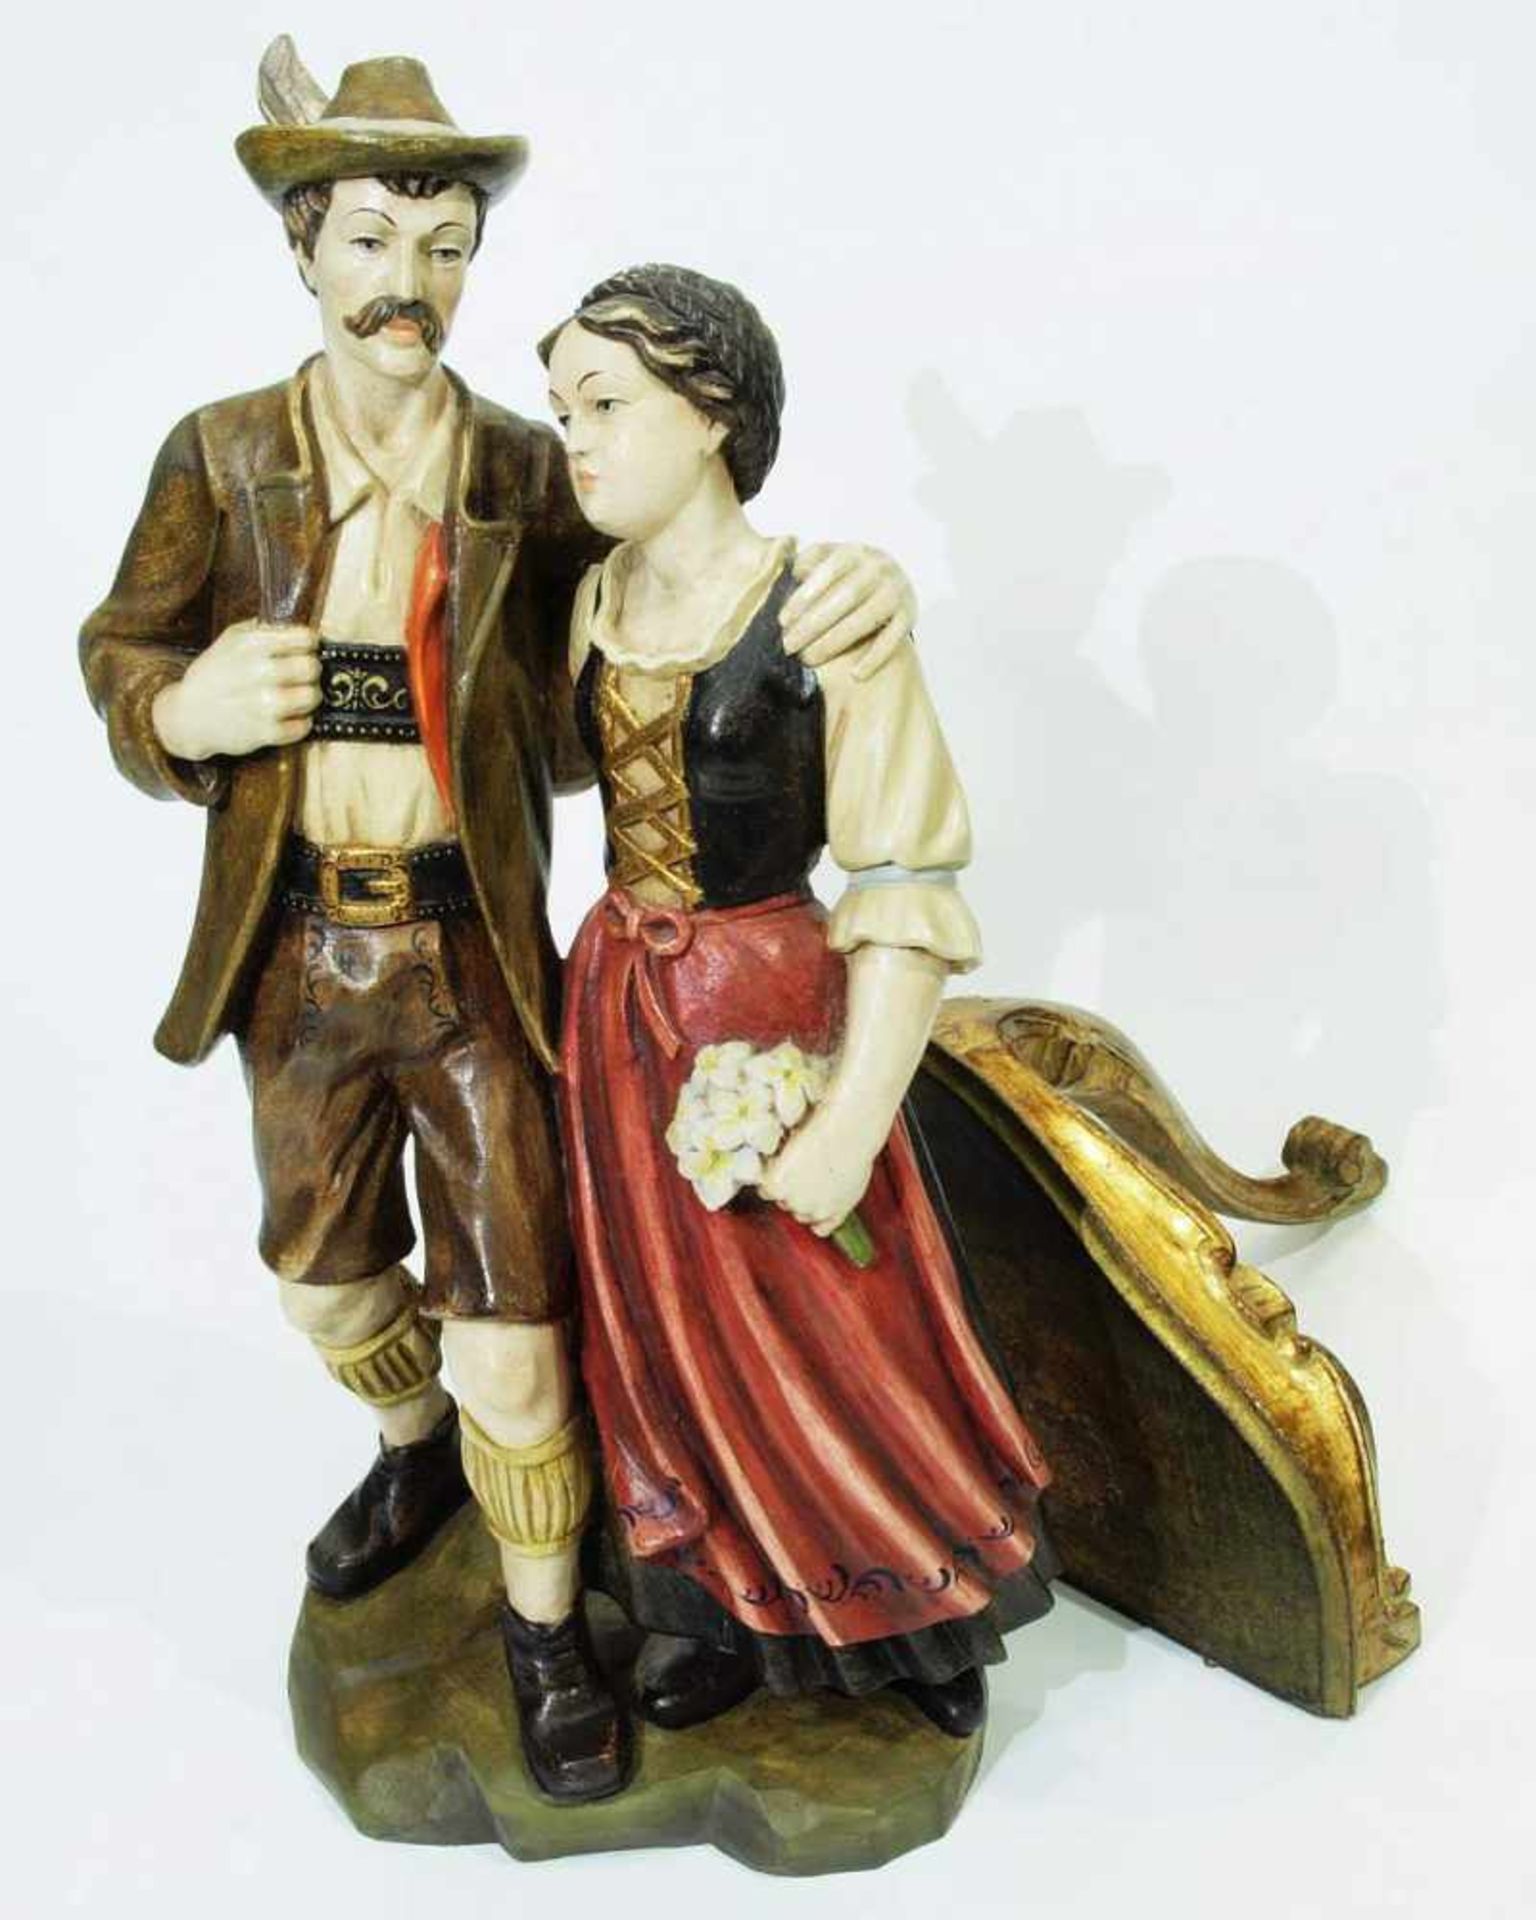 Figurengruppe "Bayerisches Bauernpaar". Figurengruppe "Bayerisches Bauernpaar". 20. Jh., Holz, - Bild 4 aus 5